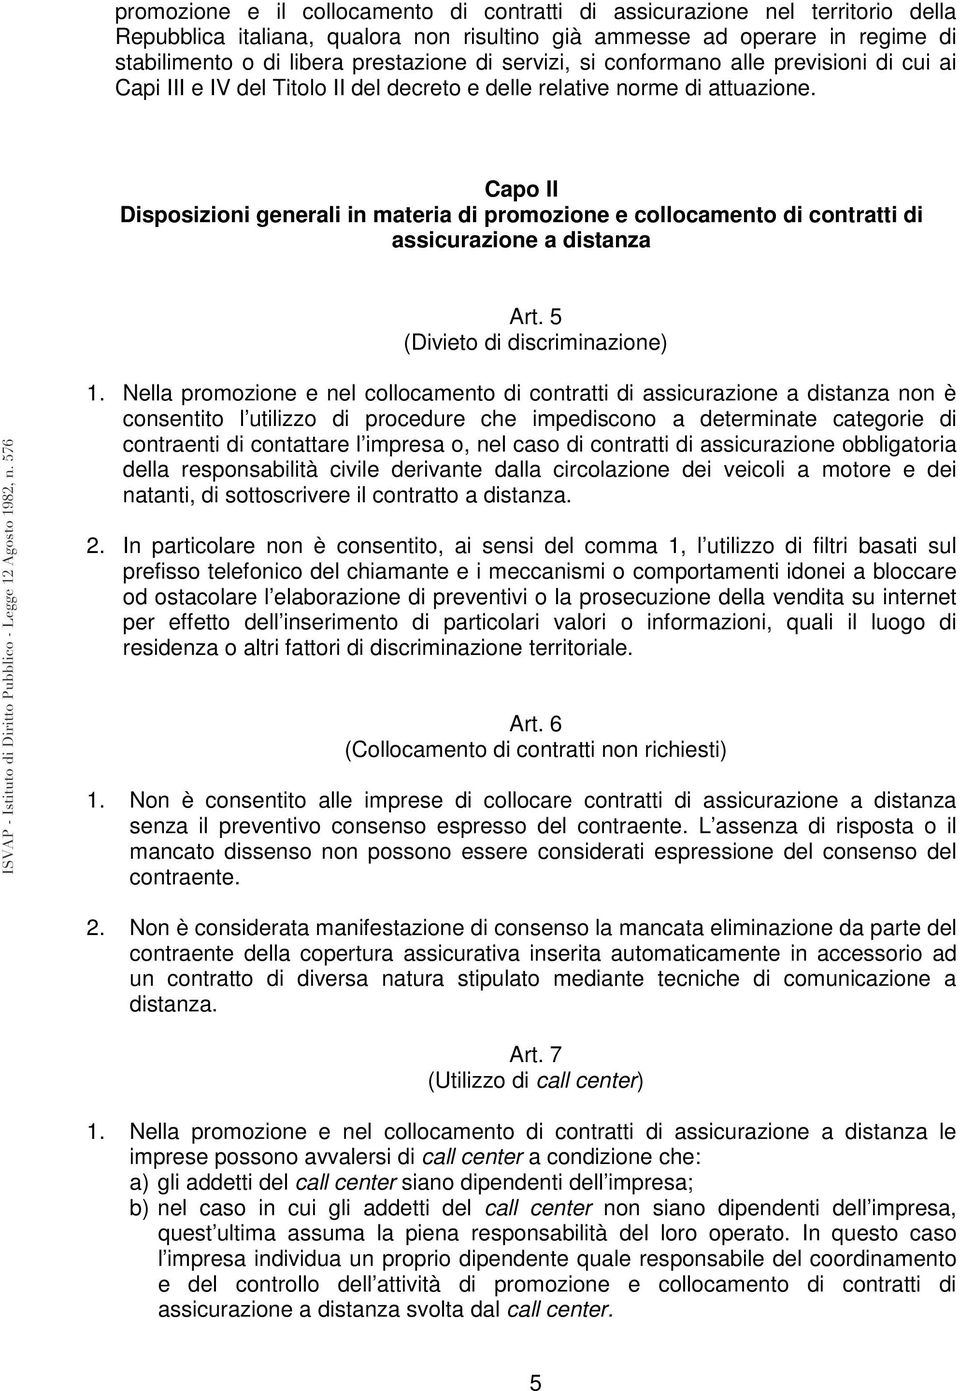 Capo II Disposizioni generali in materia di promozione e collocamento di contratti di assicurazione a distanza Art. 5 (Divieto di discriminazione) 1.